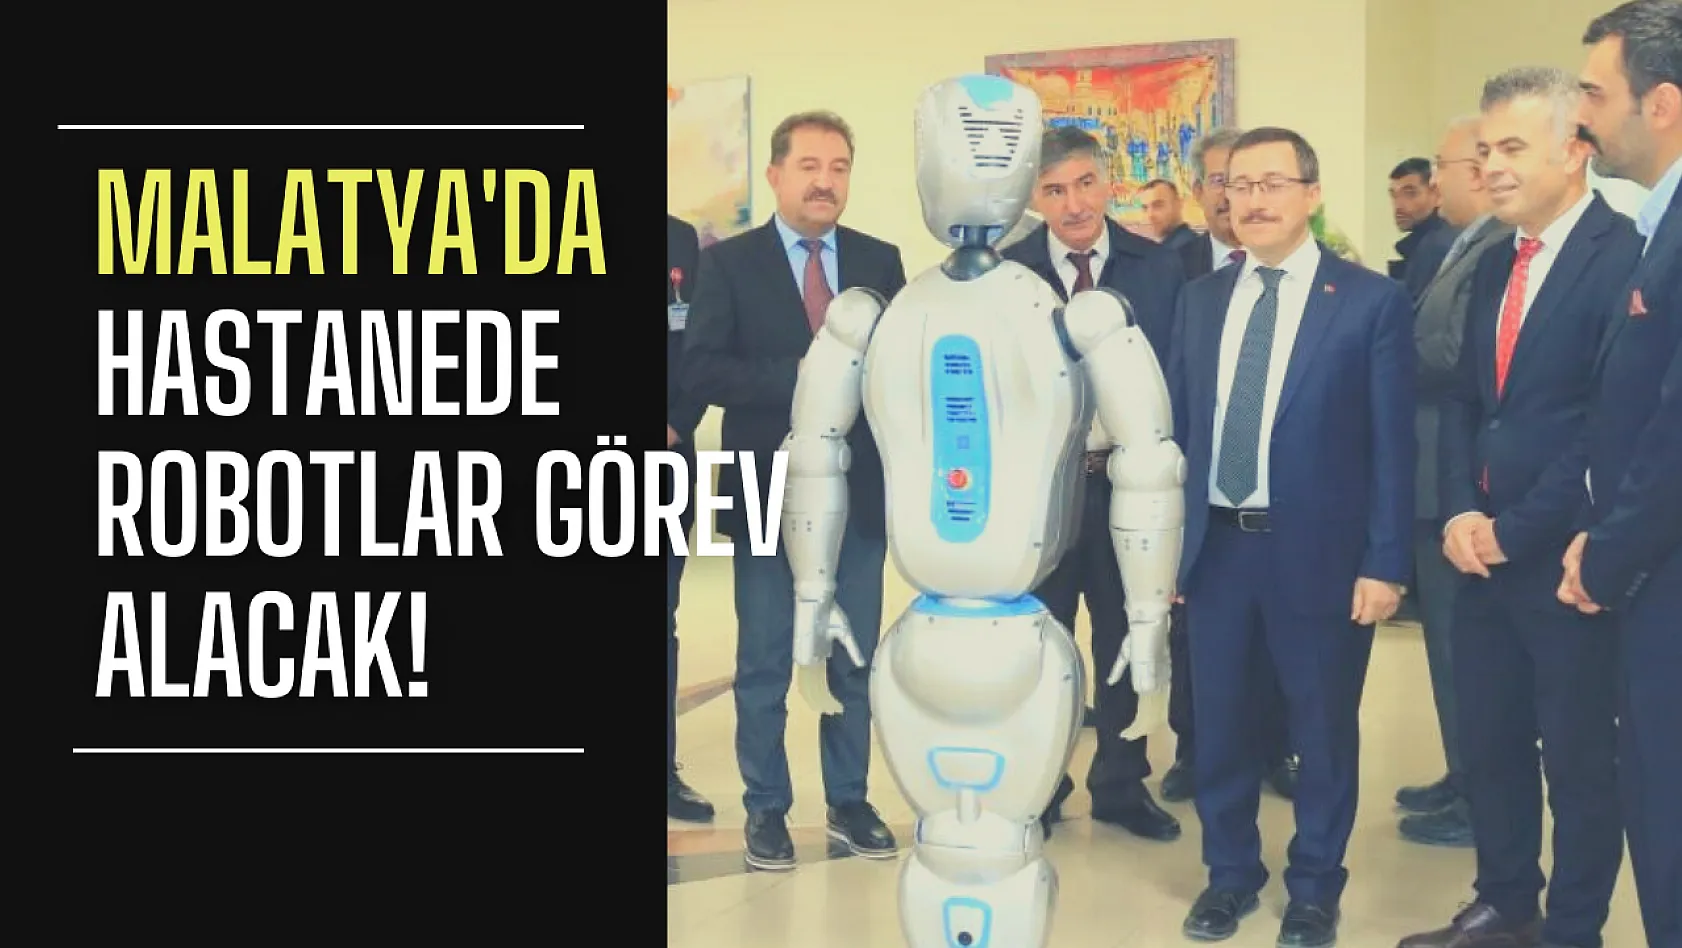 Malatya'da robotlar hastanede görev alacak